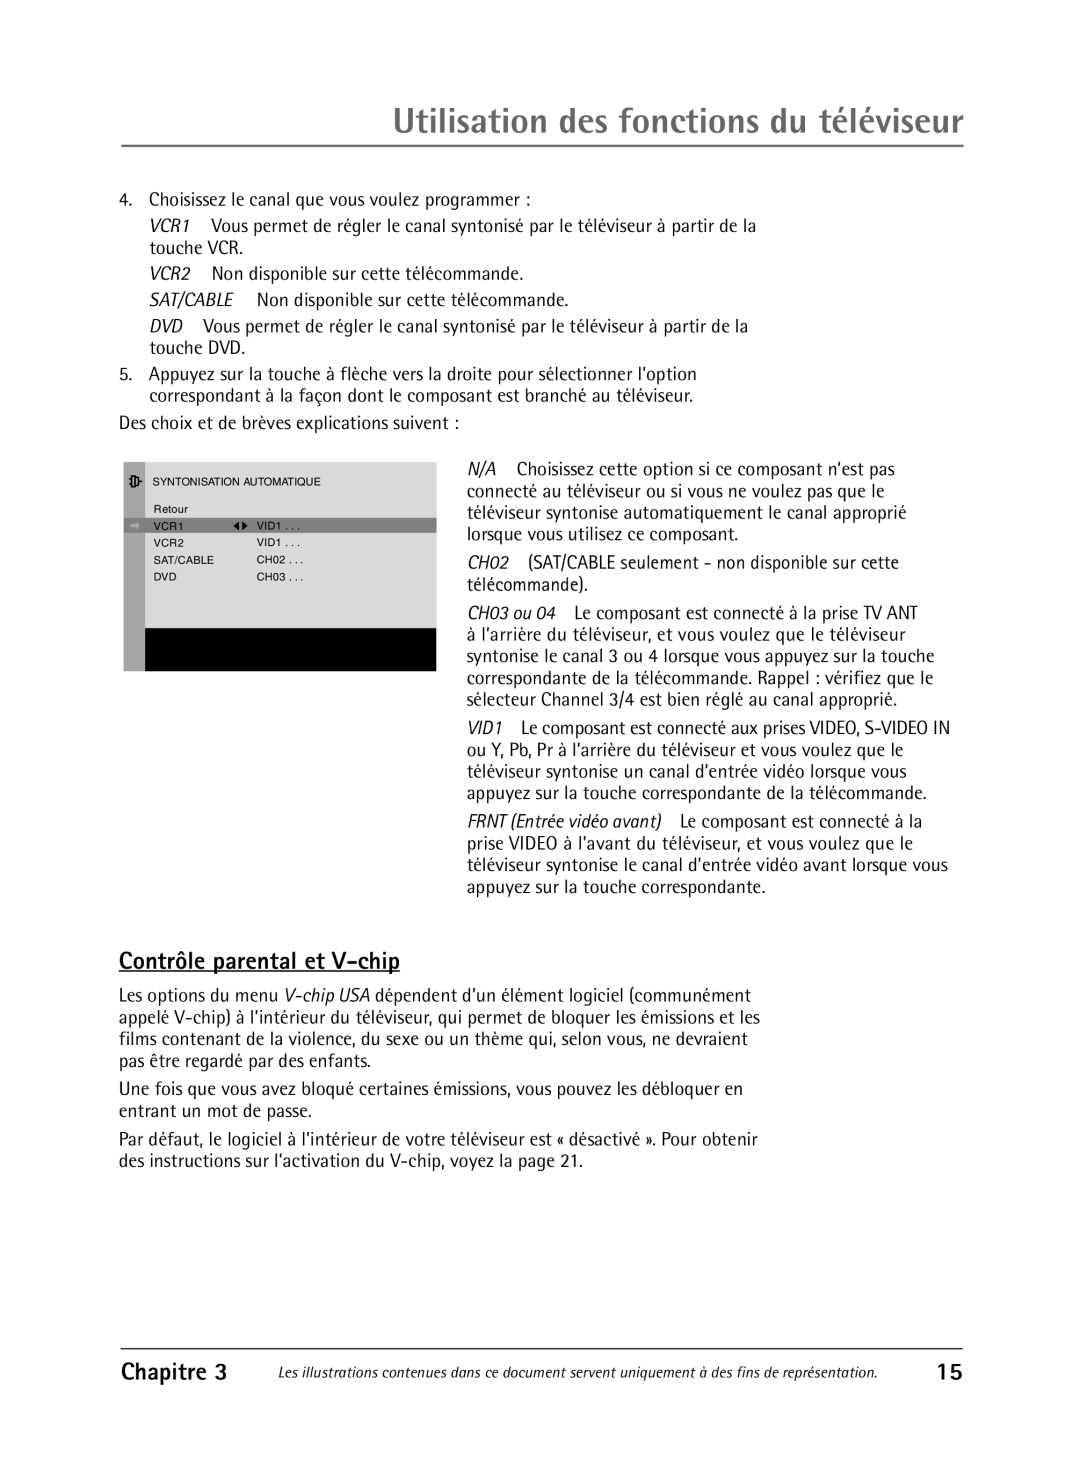 RCA 36V430T manual Utilisation des fonctions du téléviseur, Contrôle parental et V-chip, Chapitre 